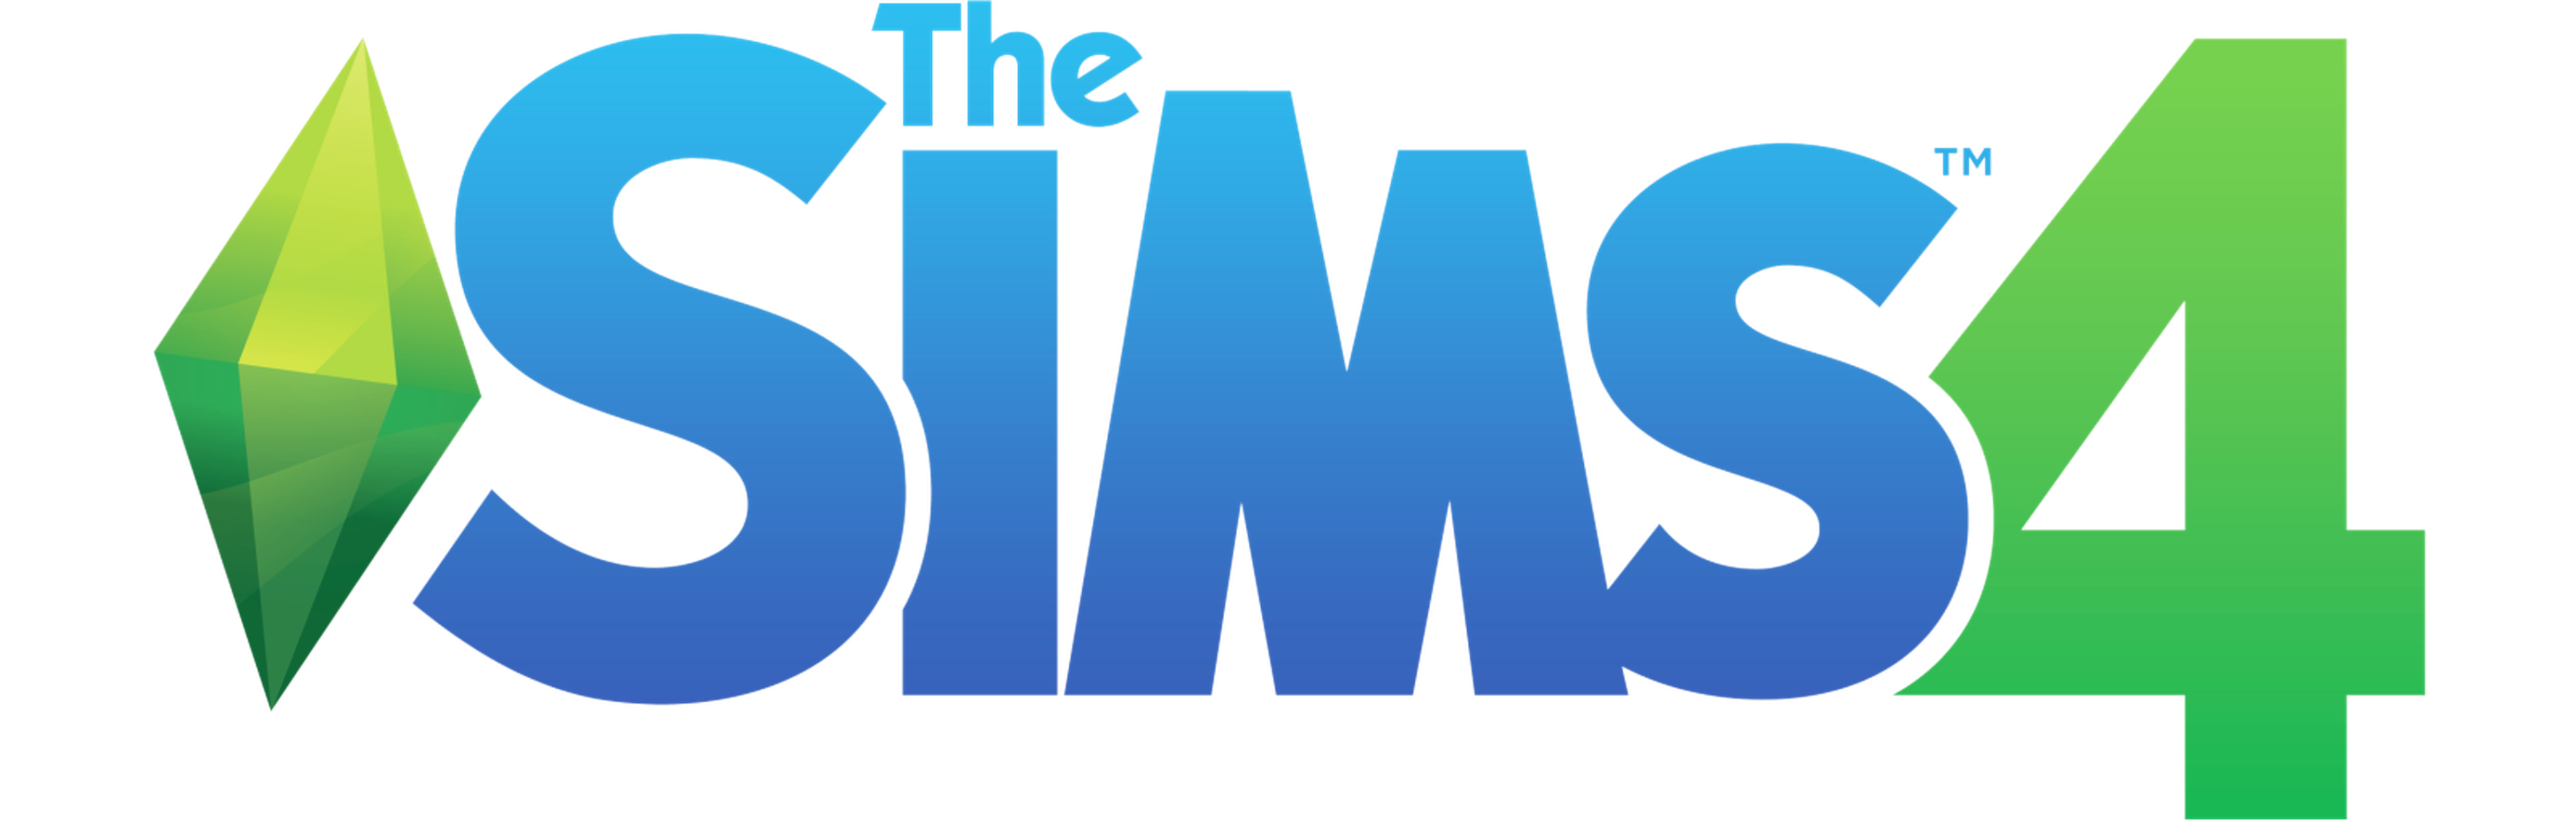 Gamescom 2013: Los Sims 4, nuevos datos y pantallas